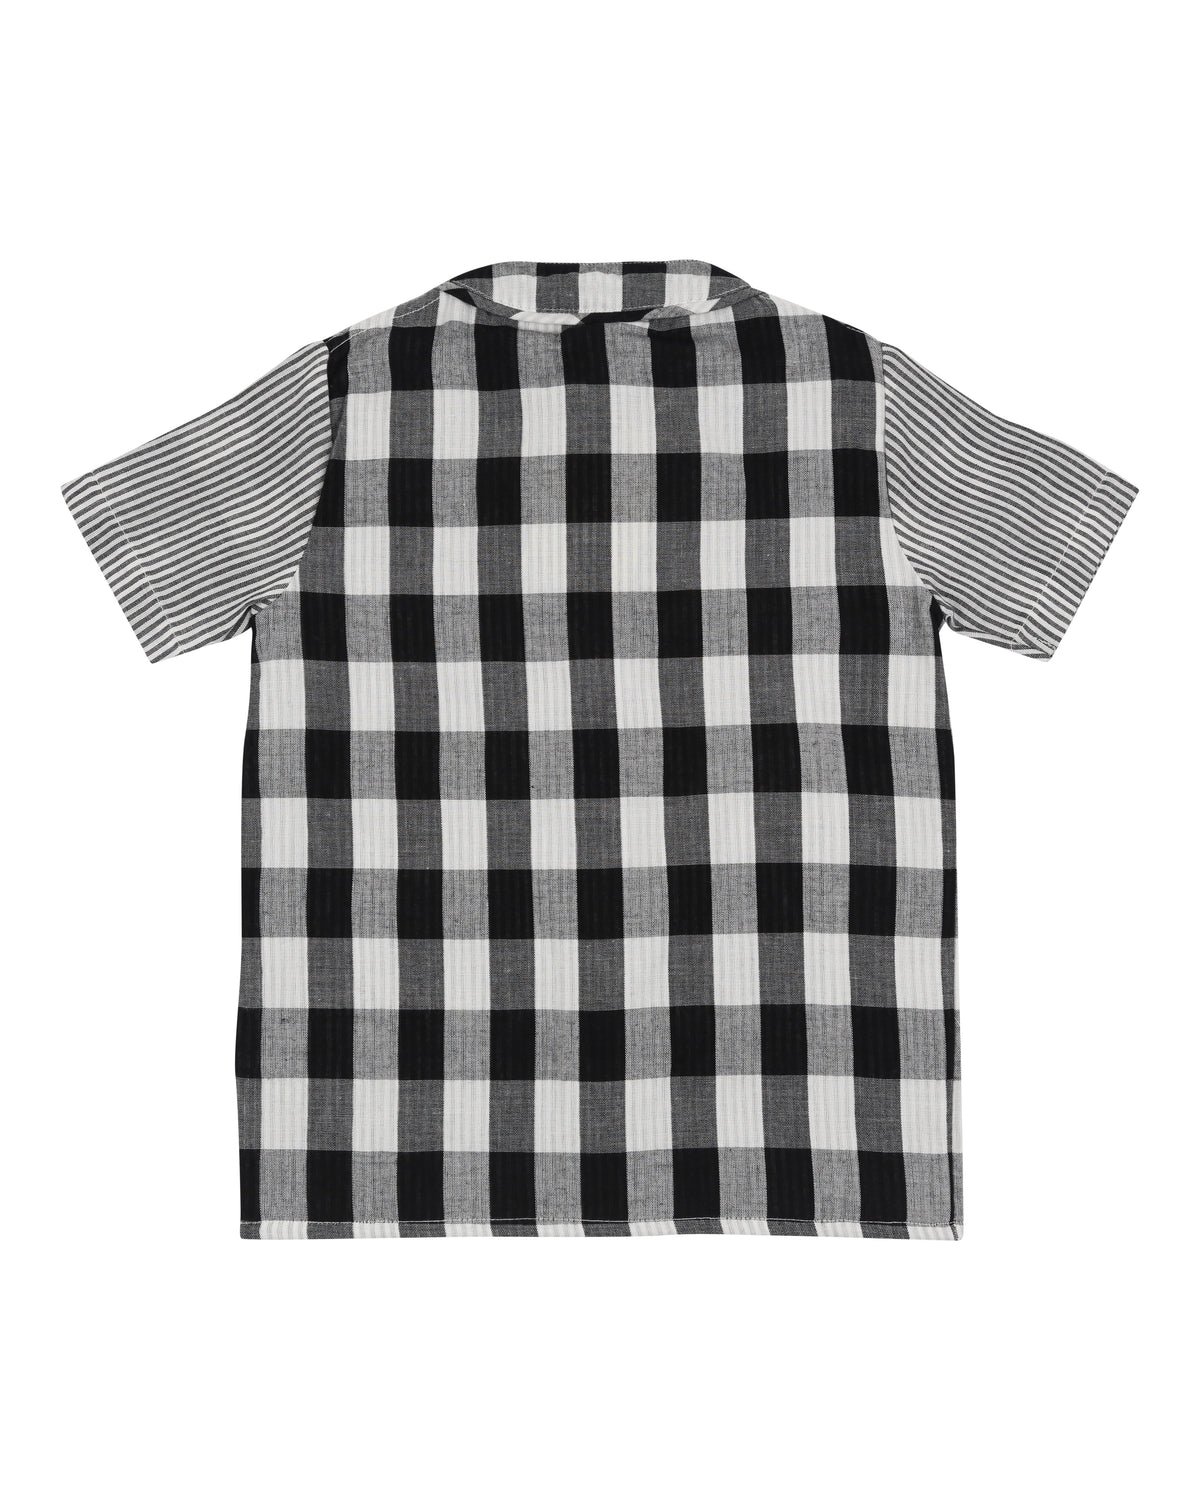 Stripe/Check Shirt